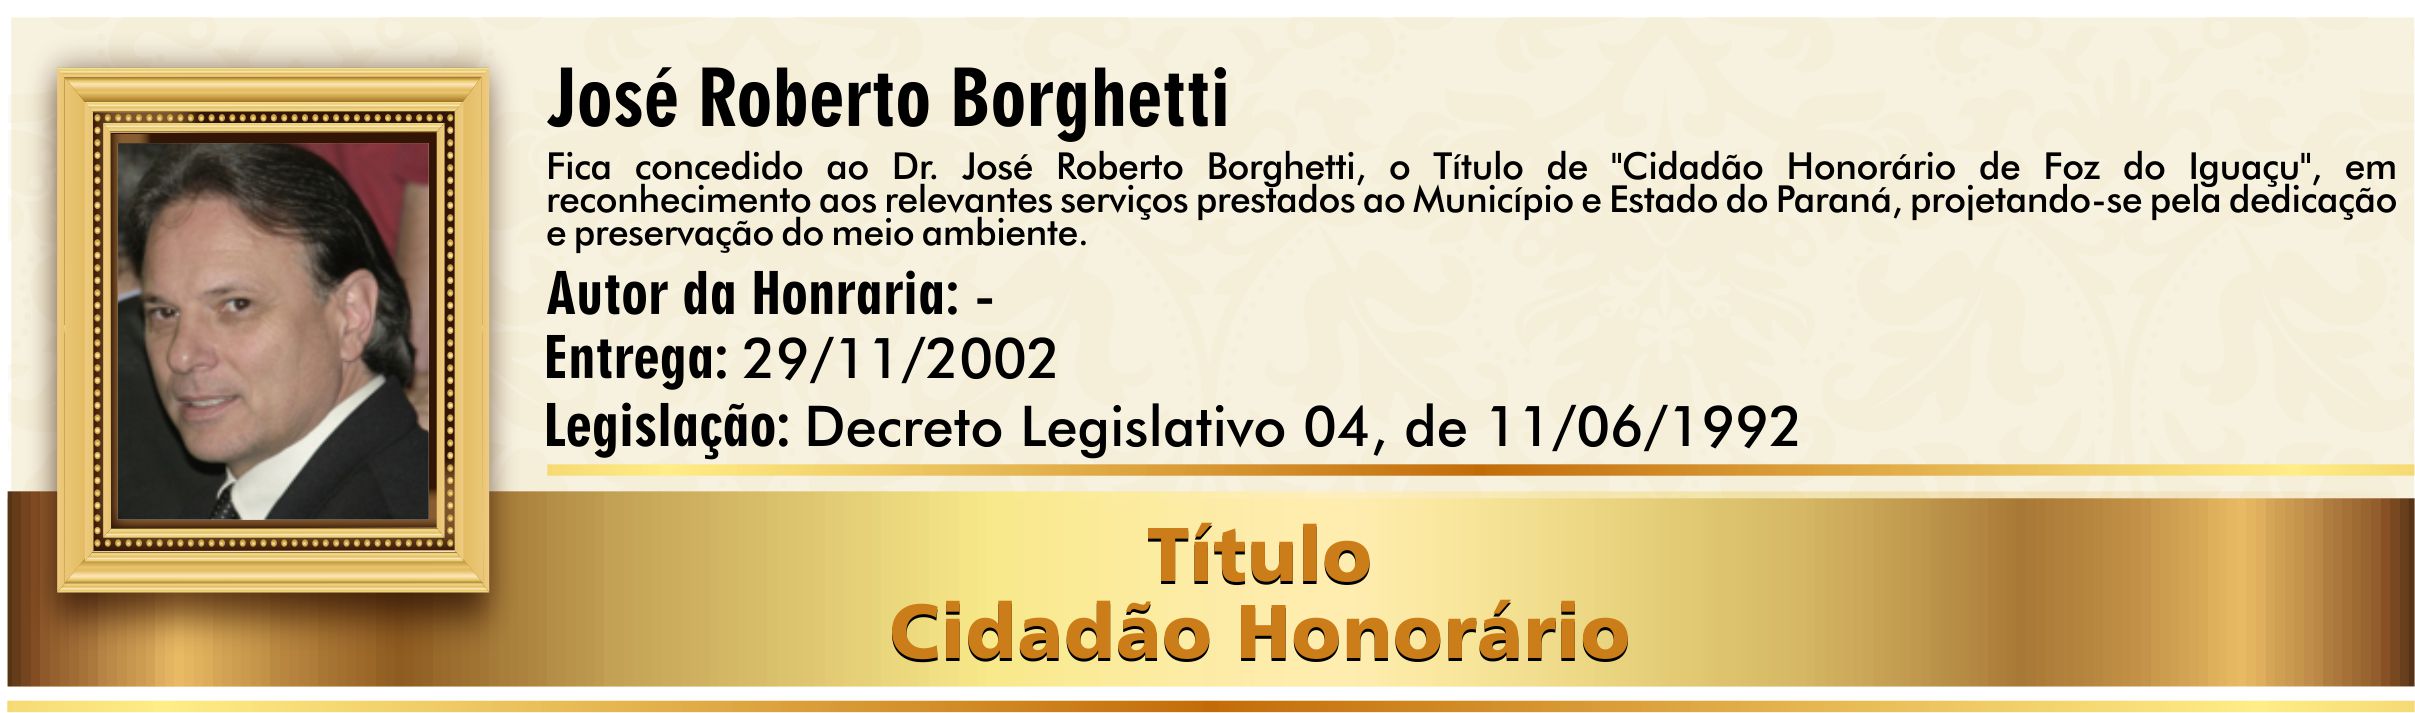 José Roberto Borghetti